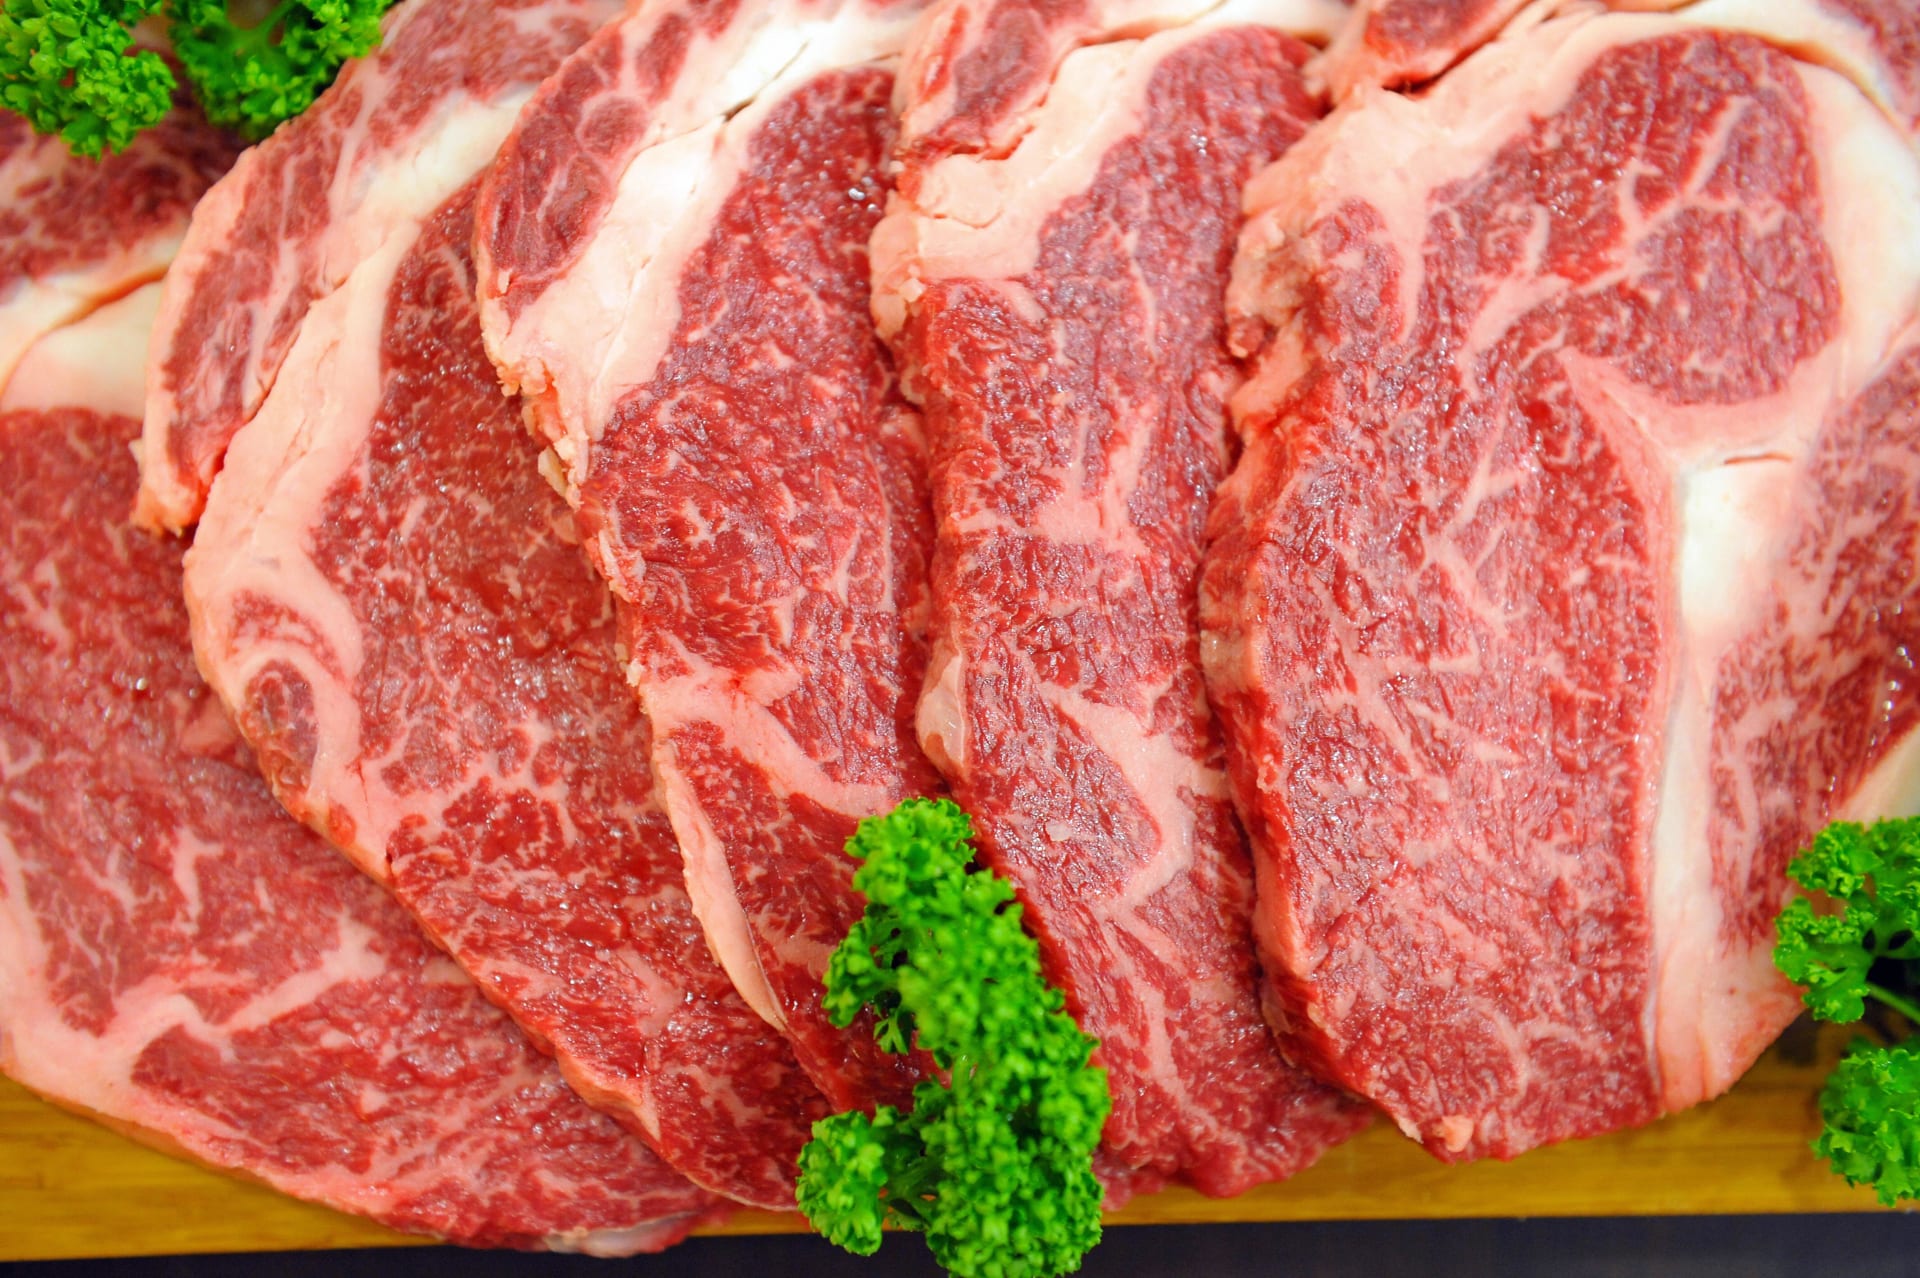 دراسة: اللحم الأبيض سيئ كاللحم الأحمر فيما يتعلق بمستوى الكوليسترول